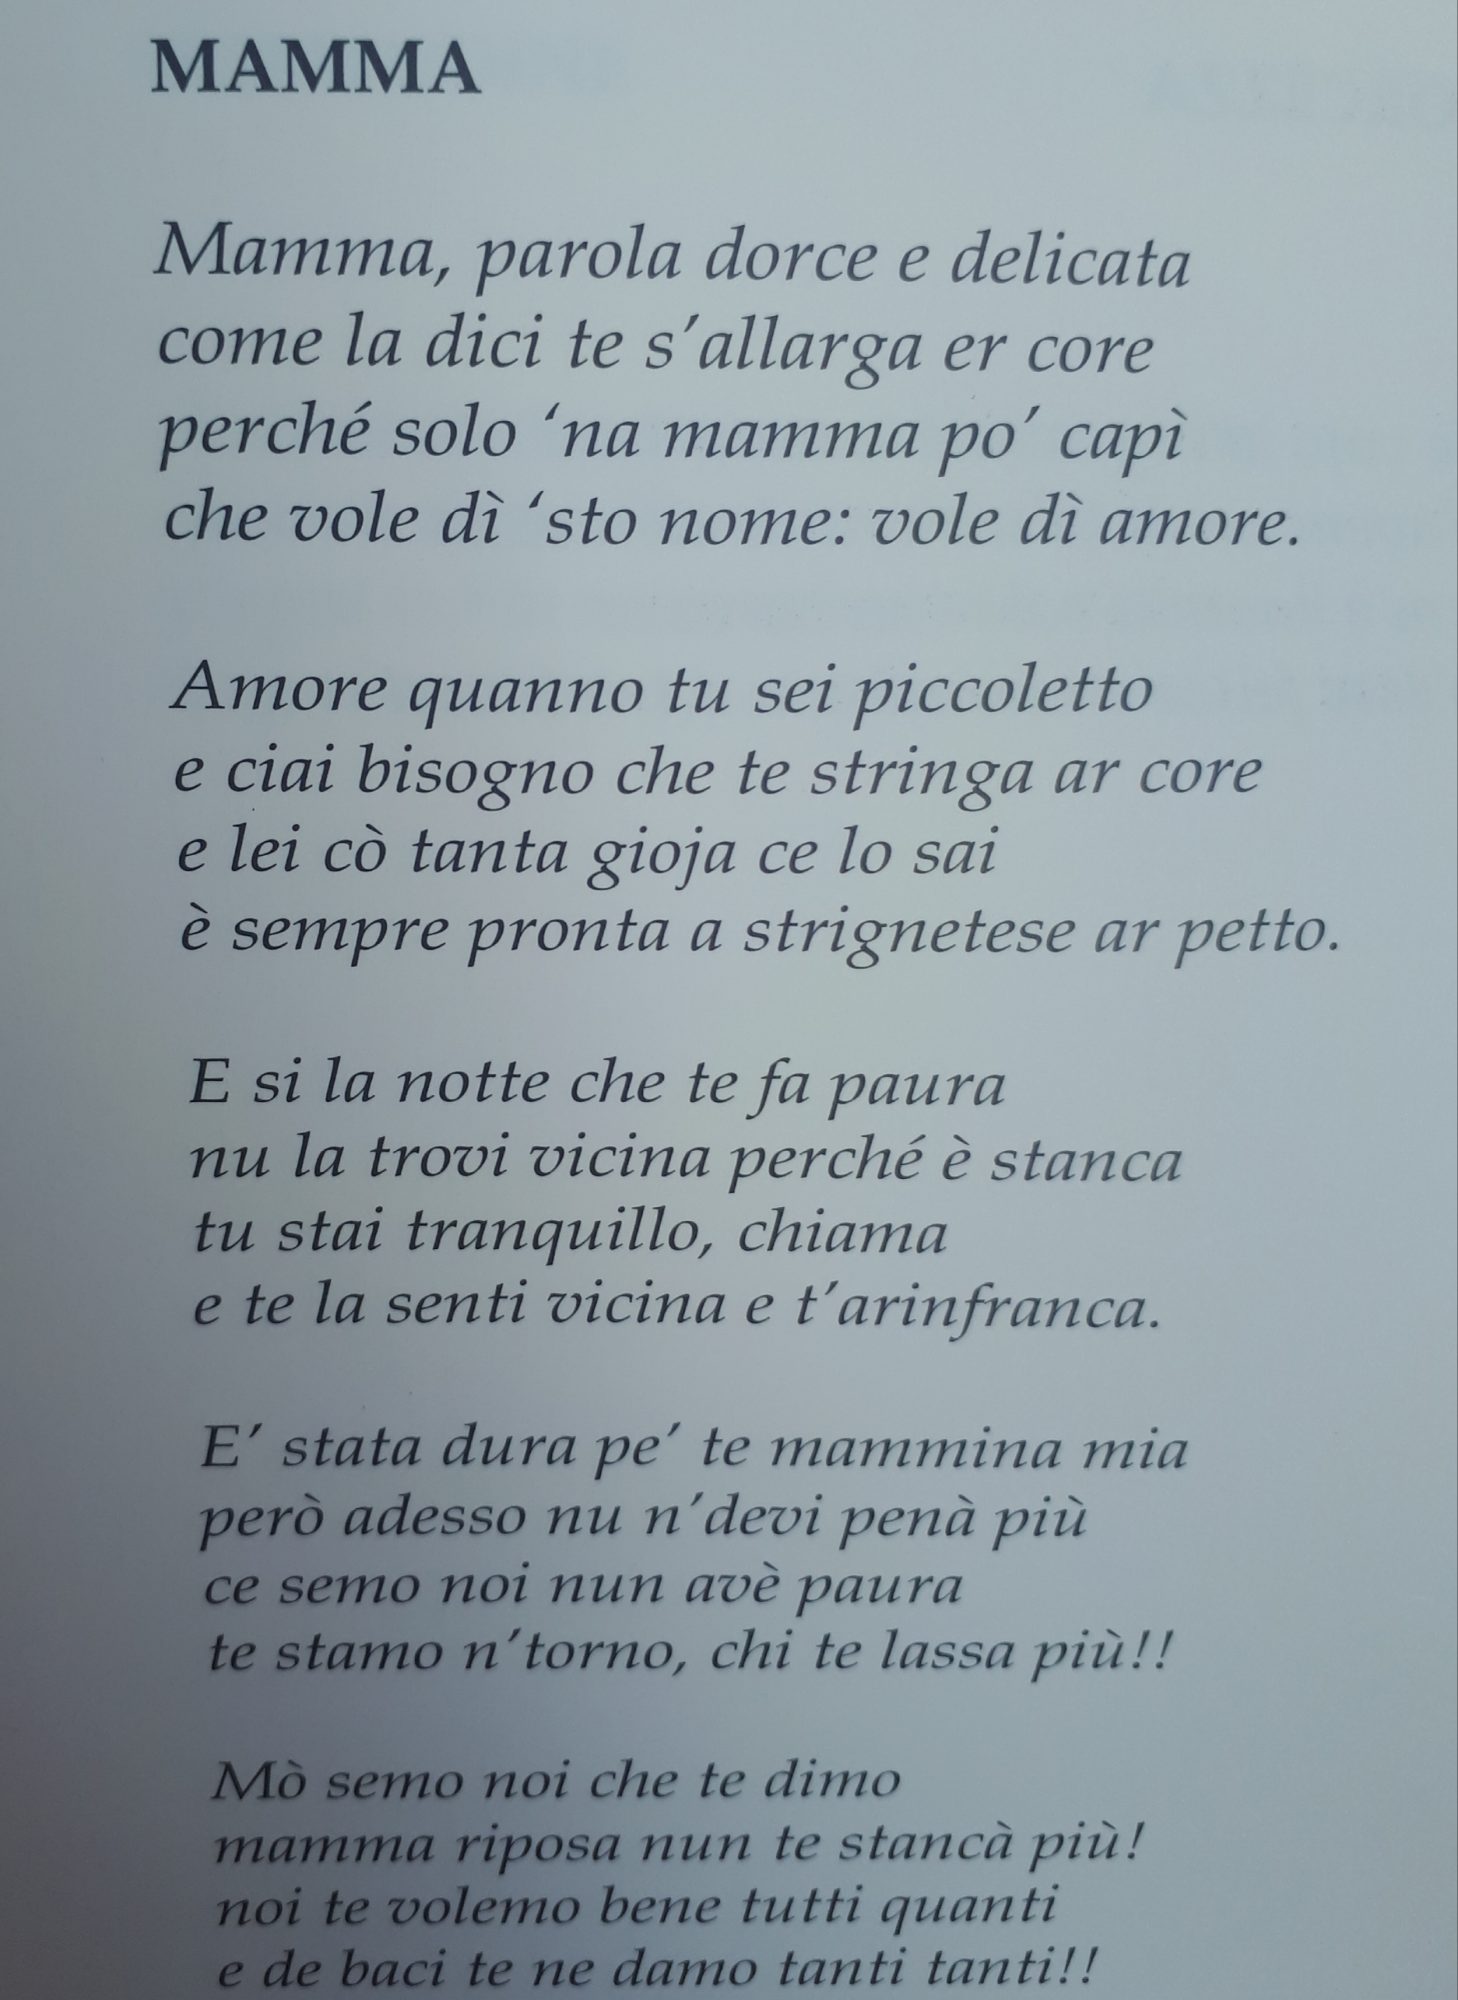 Sermoneta Mamma Tina Ferraro Dedica La Sua Poesia A Tutte Le Mamme News 24 It